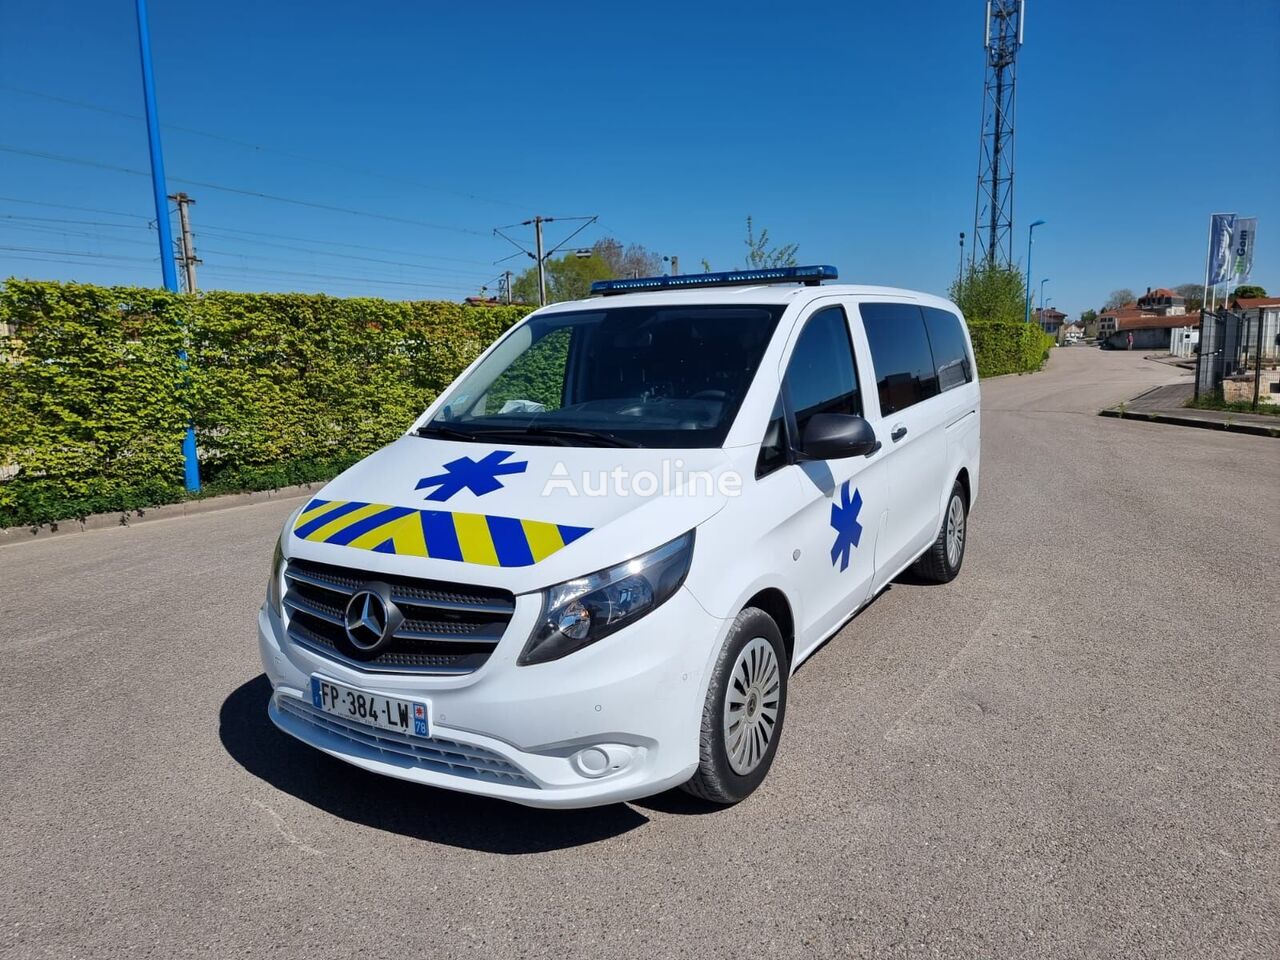 Mercedes-Benz VITO L1H1 136 CV - 200 000 km - 2021  ambulanse